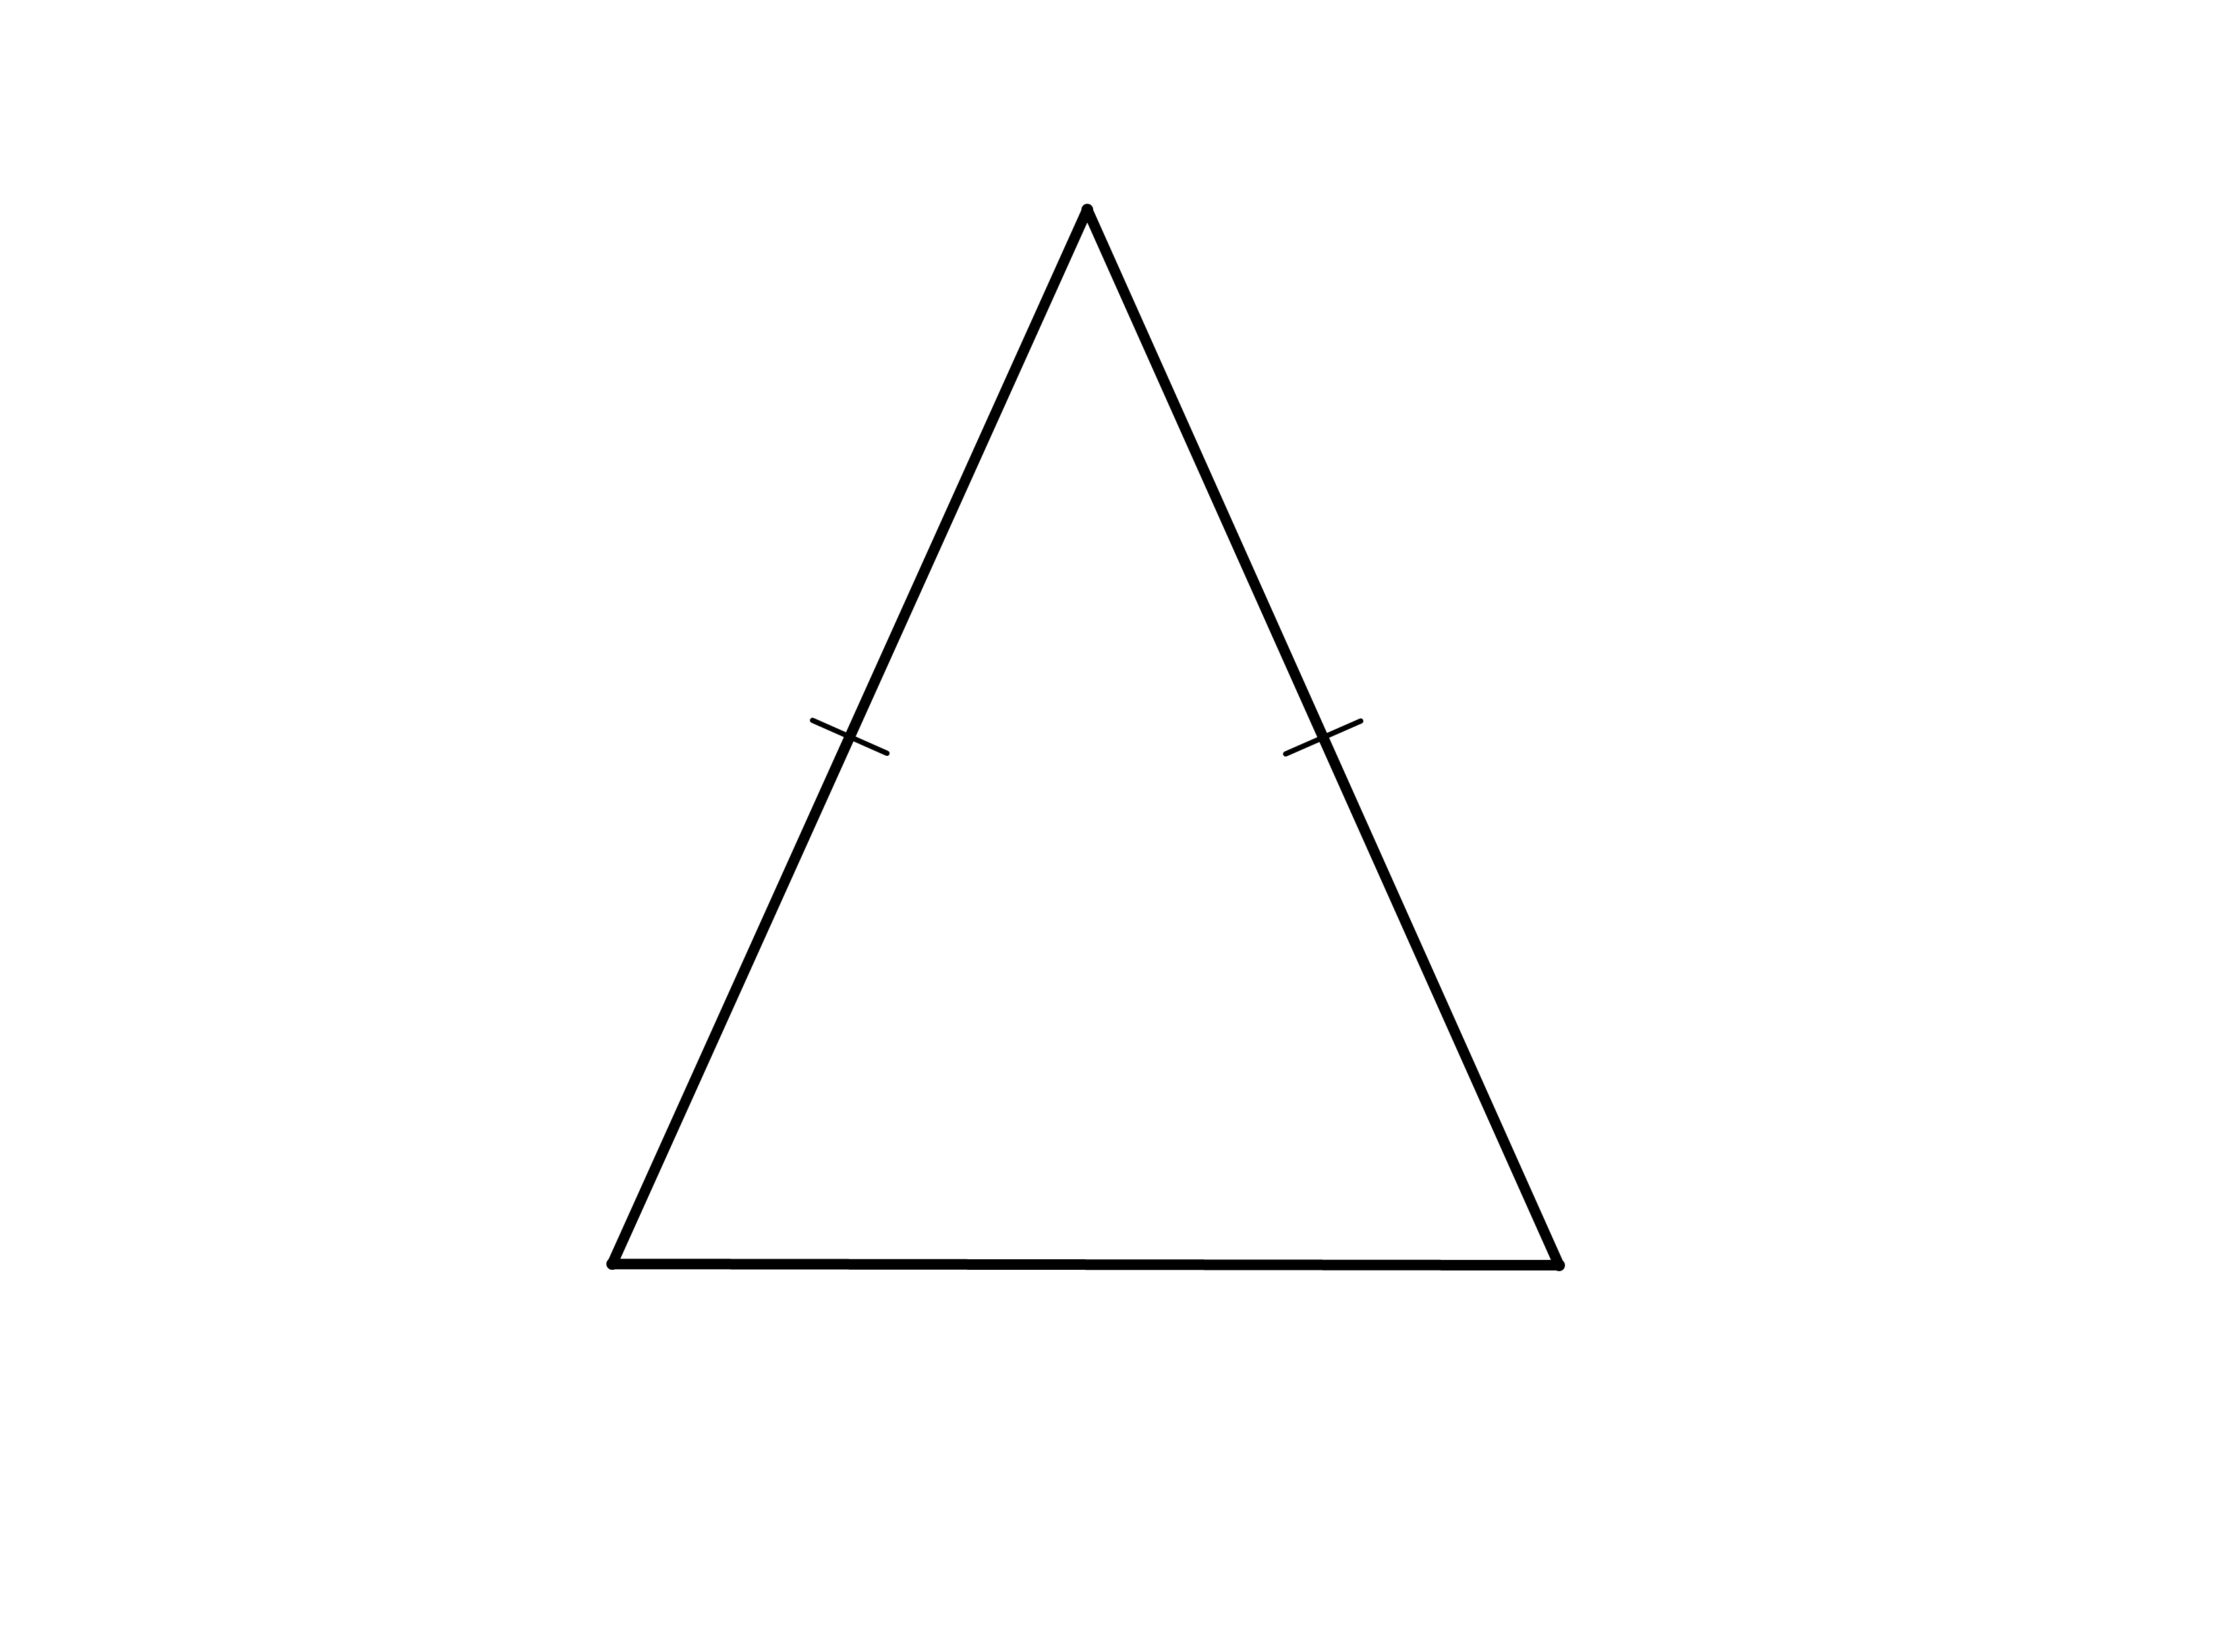 are all isosceles right triangles similar